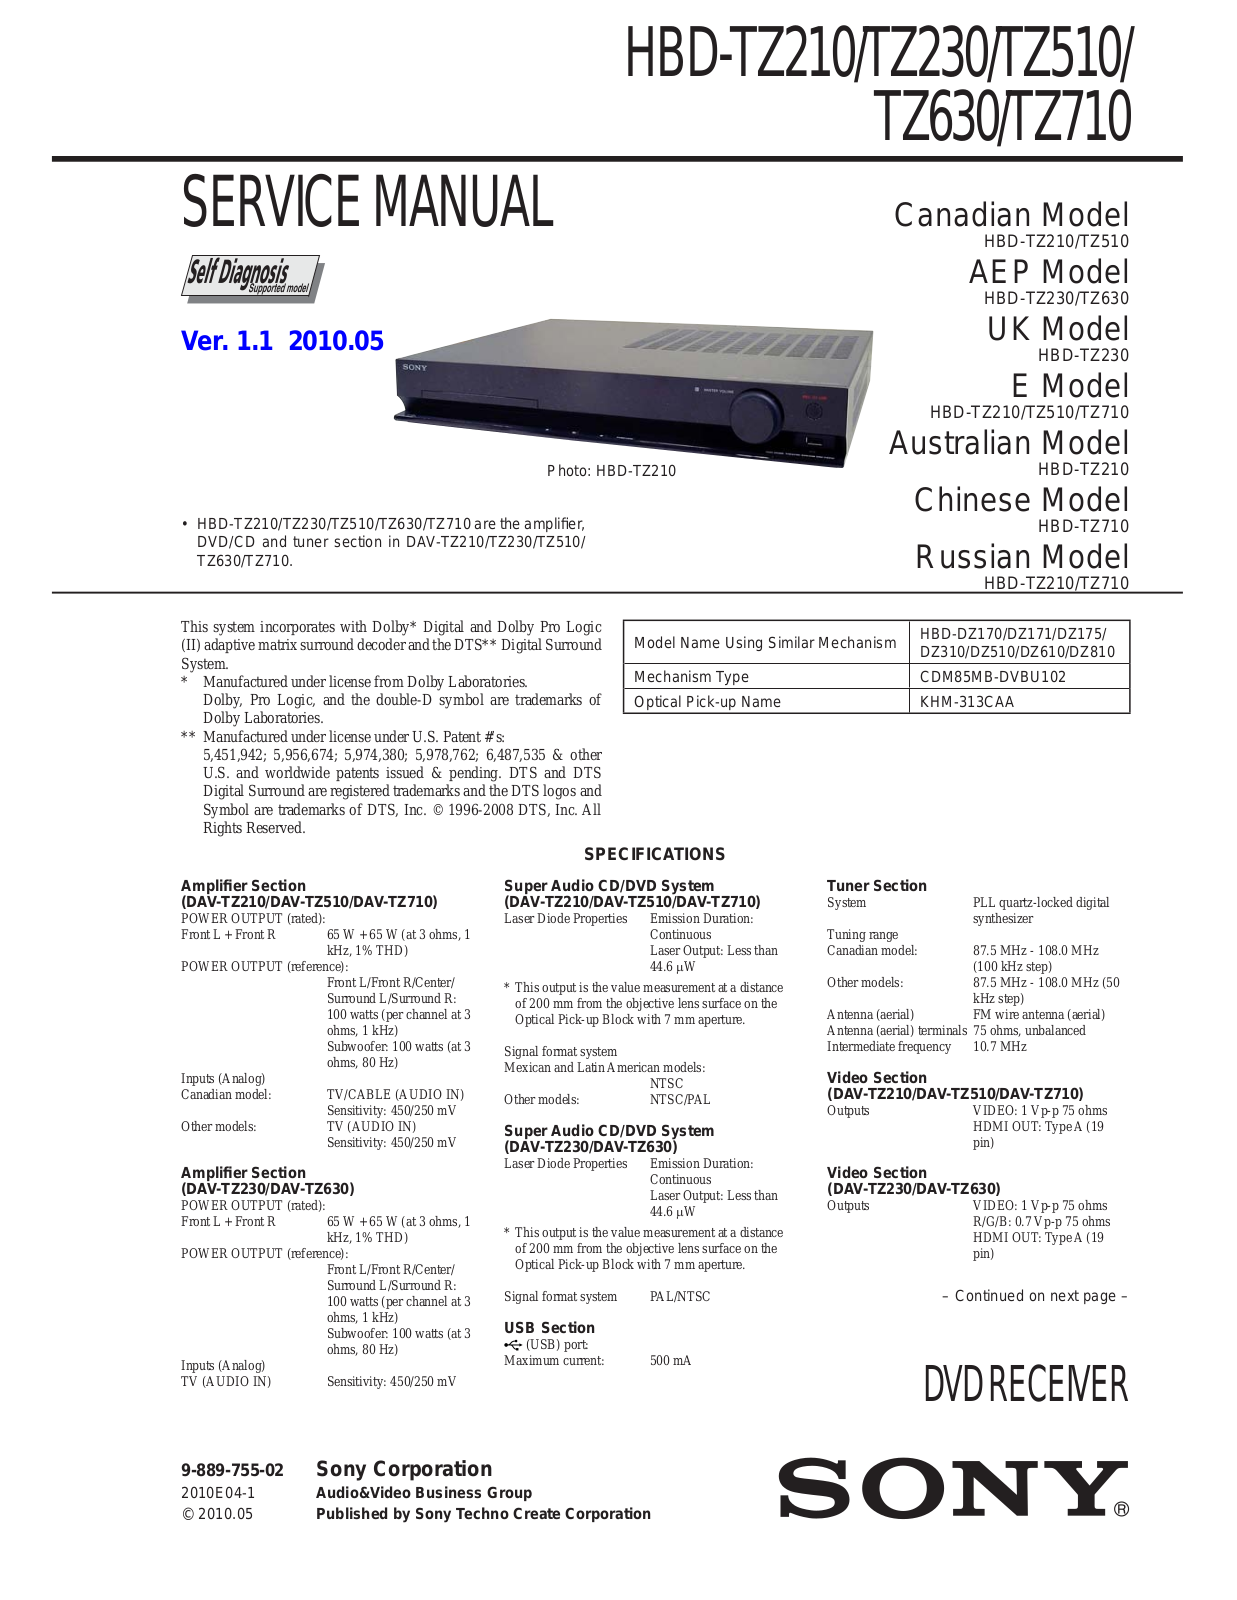 Sony HBD-TZ630, HBD-TZ510, HBD-TZ230, HBD-TZ210, HBD-TZ710 User Manual